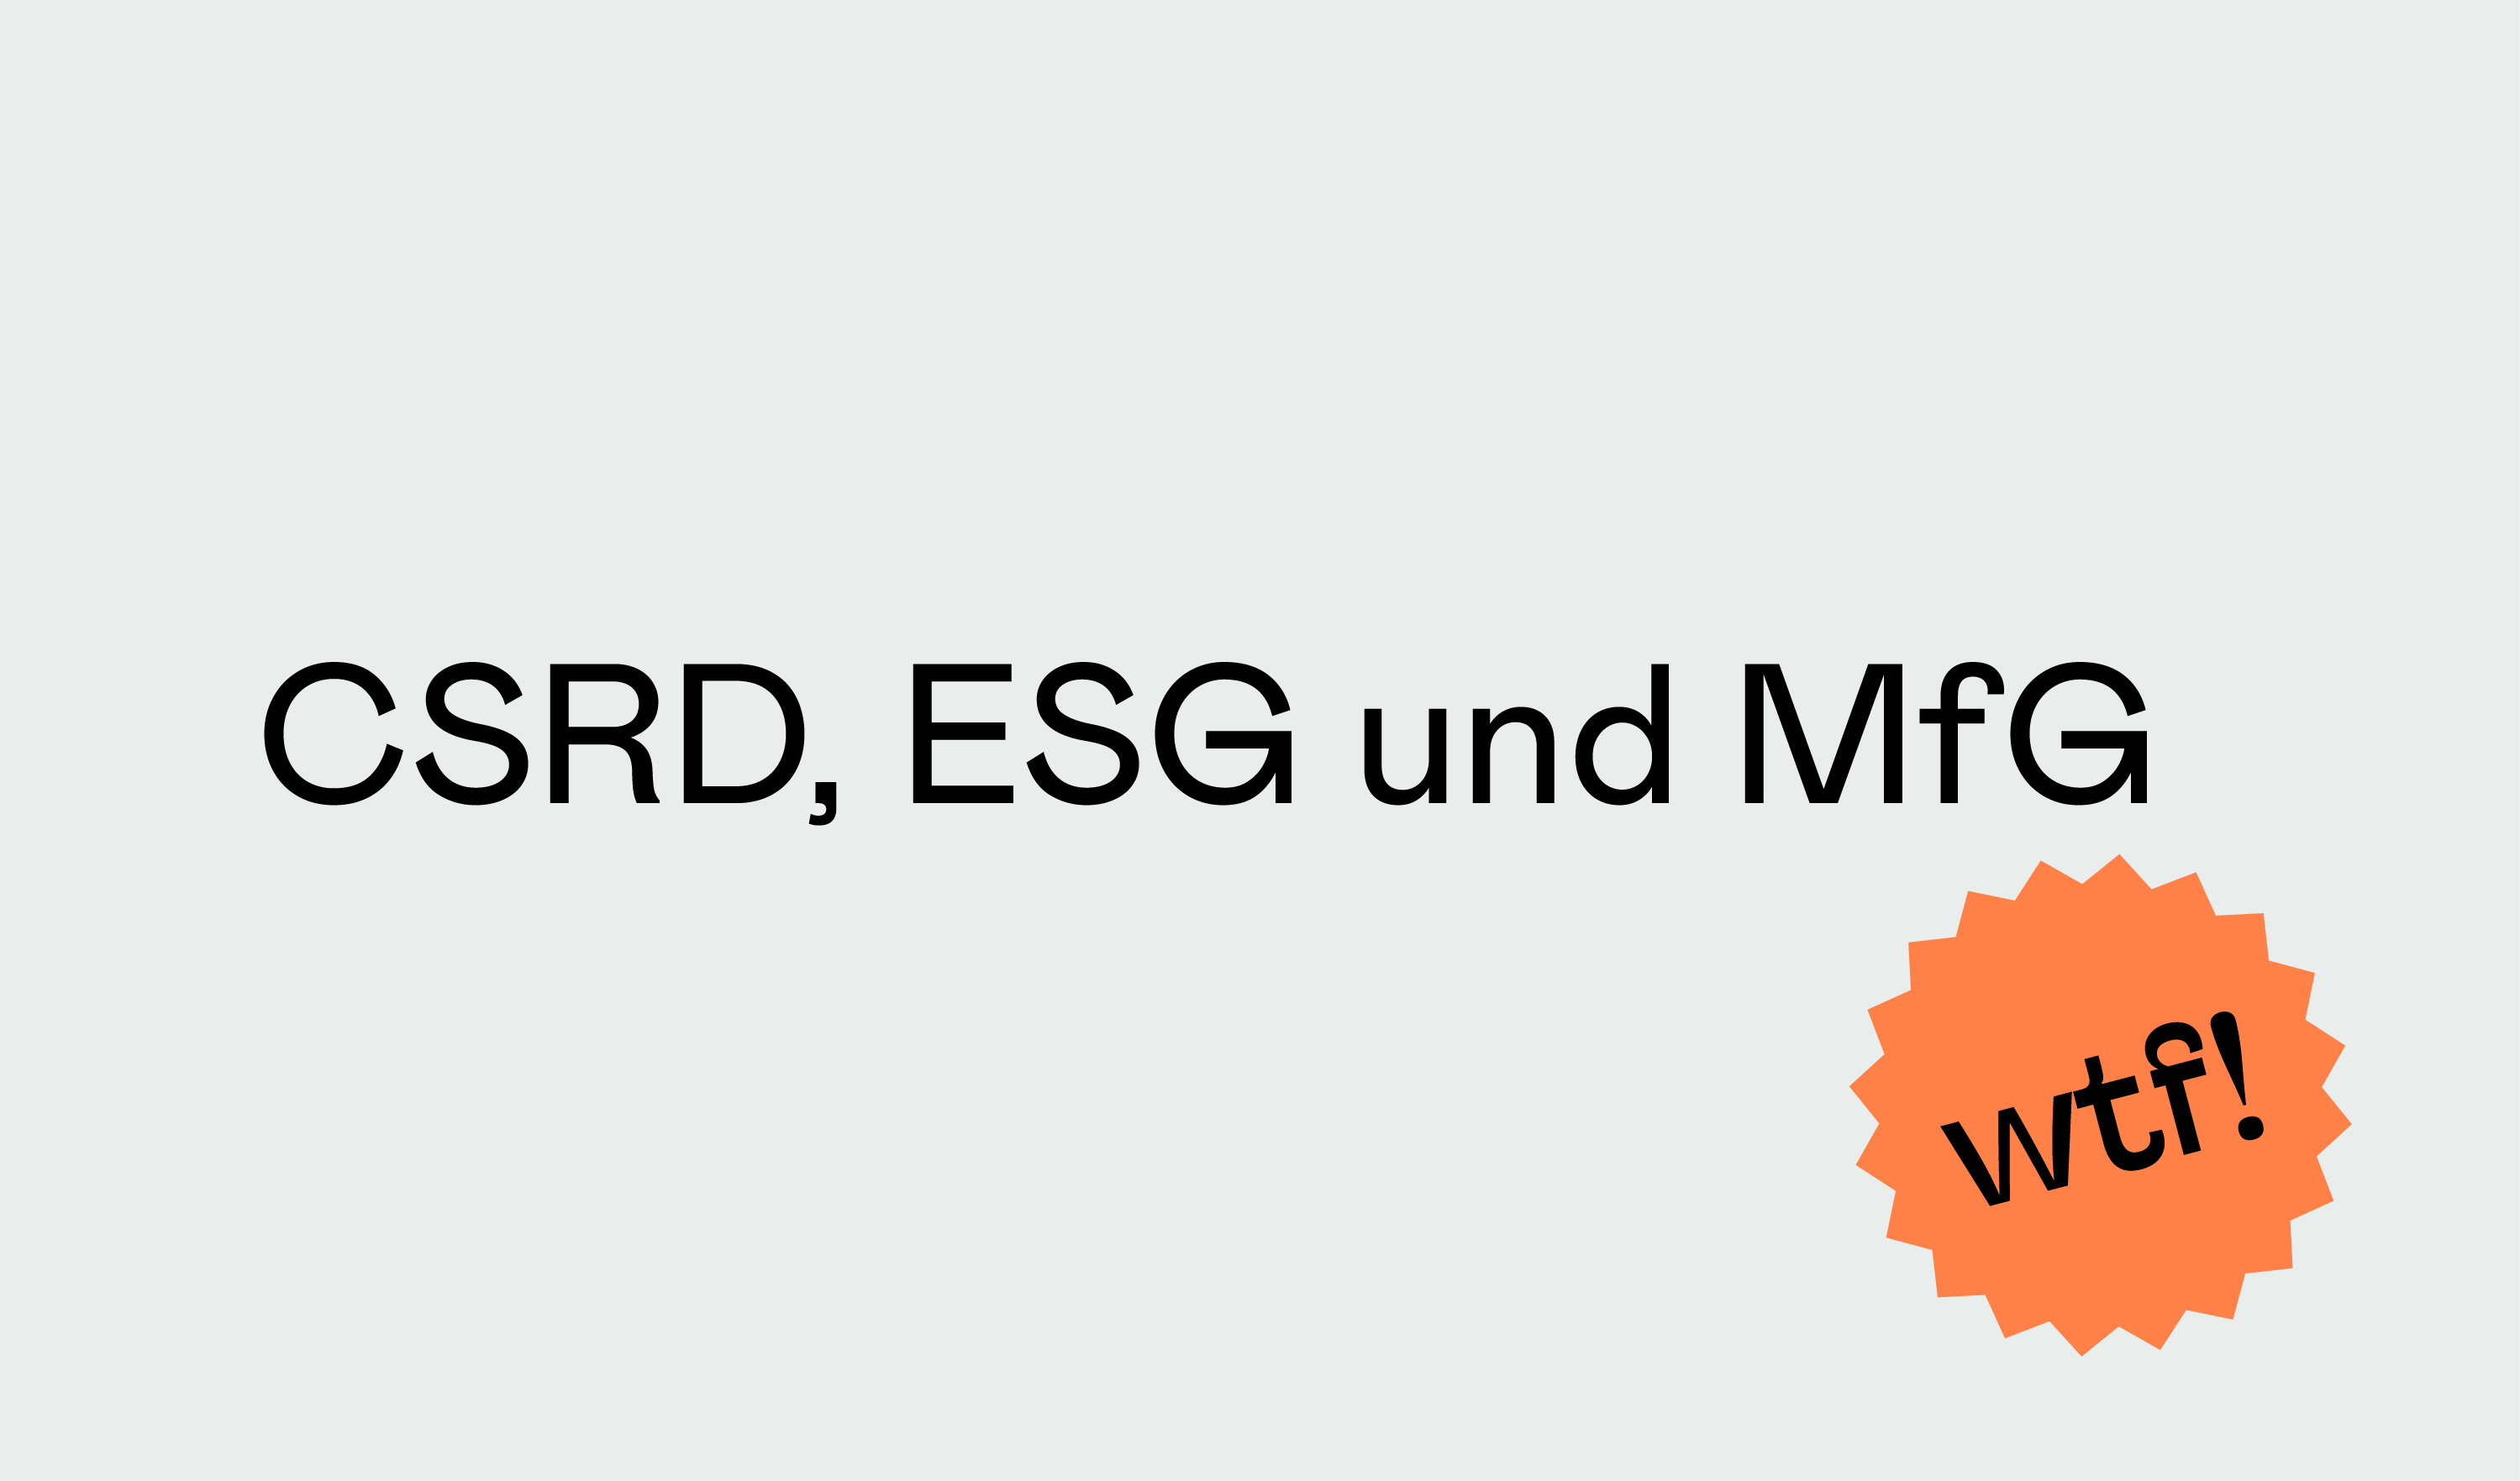 grauer Hintergrund, darauf stehen die Worte "CSRD, ESG und MfG" neben einem orangenen Button mit der Aufschrift "wtf!"